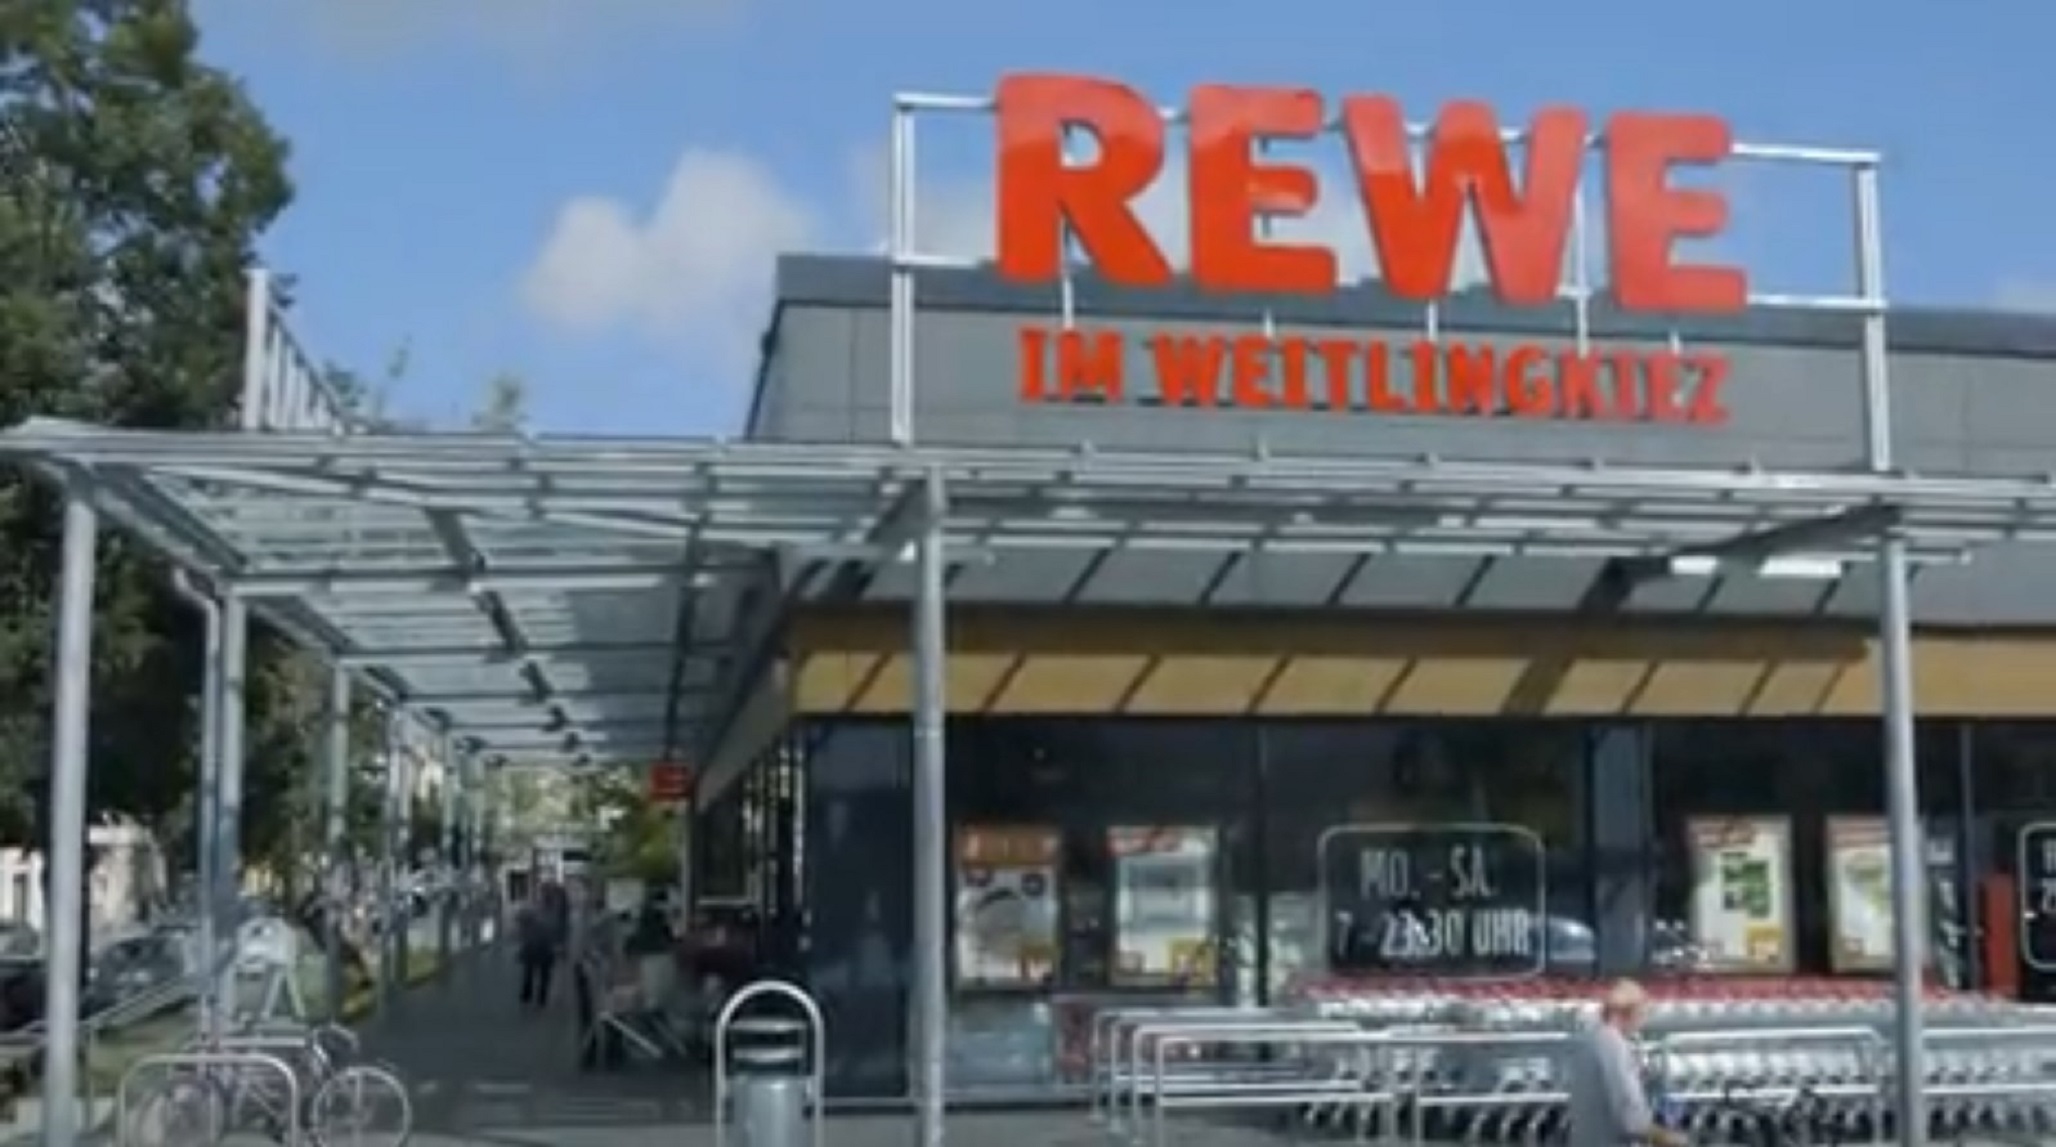 REWE Markt in Berlin-Lichtenberg.